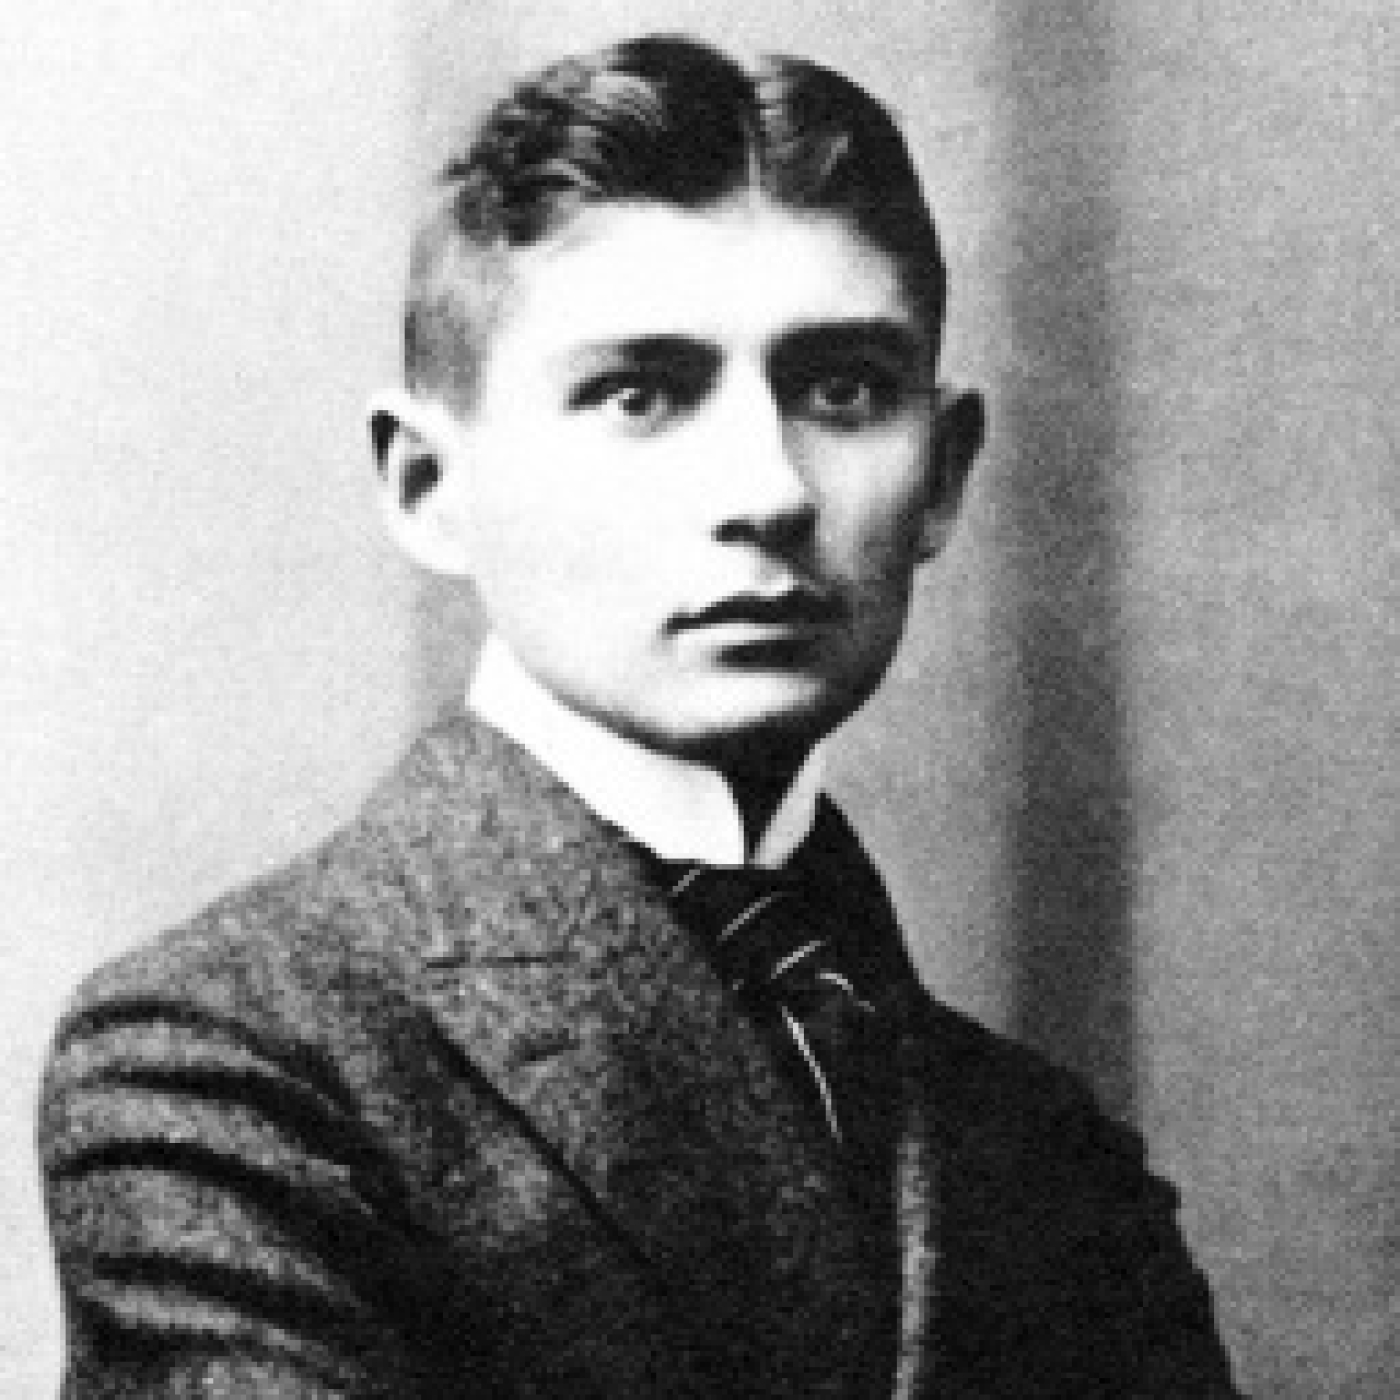 Verne y Wells Ciencia Ficción: Centenario Frank Kafka 1924-2024; La Metamorfosis